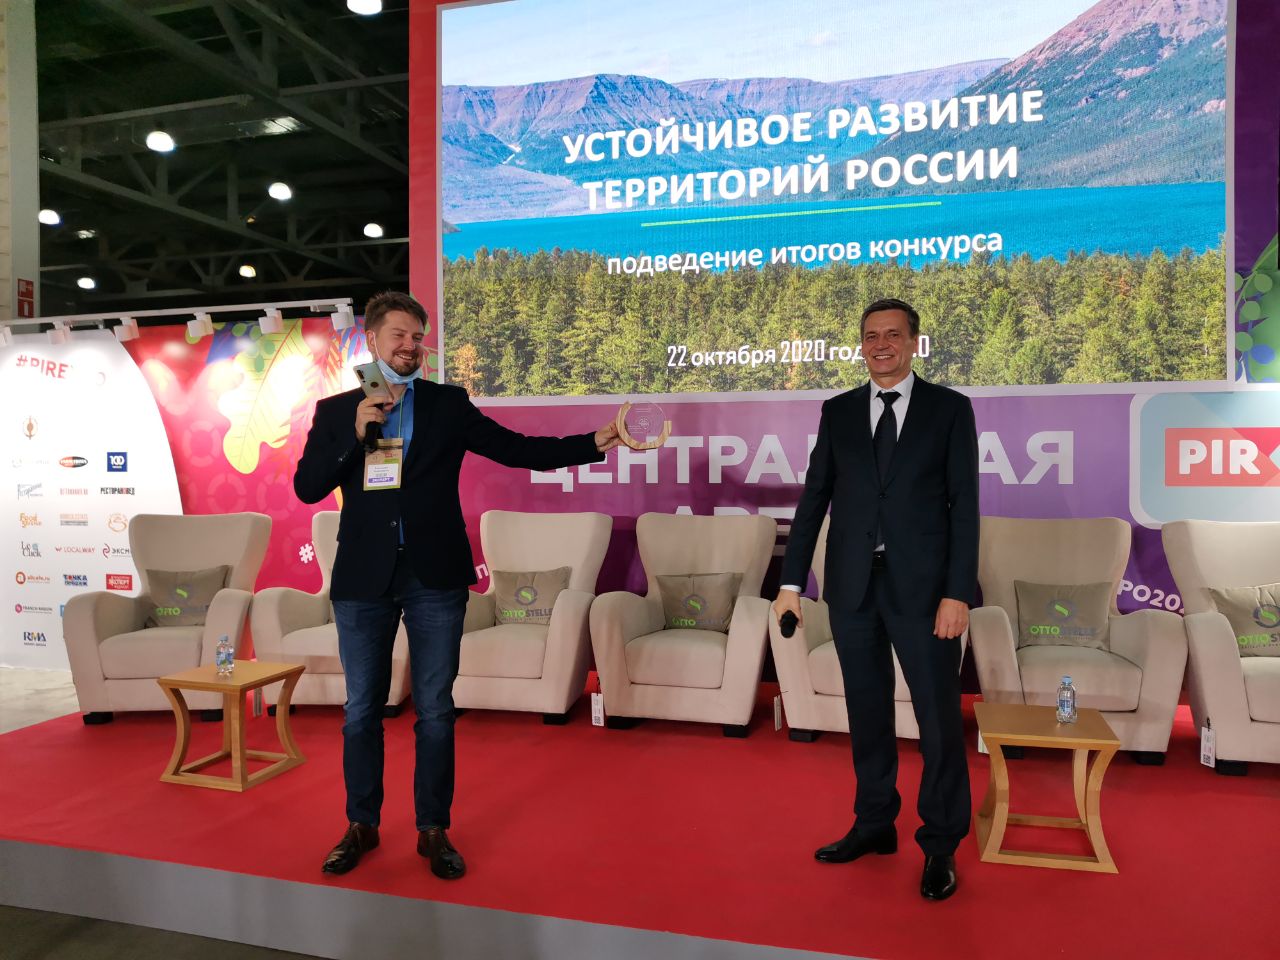 Победители конкурса «Устойчивое развитие территорий России» 2020